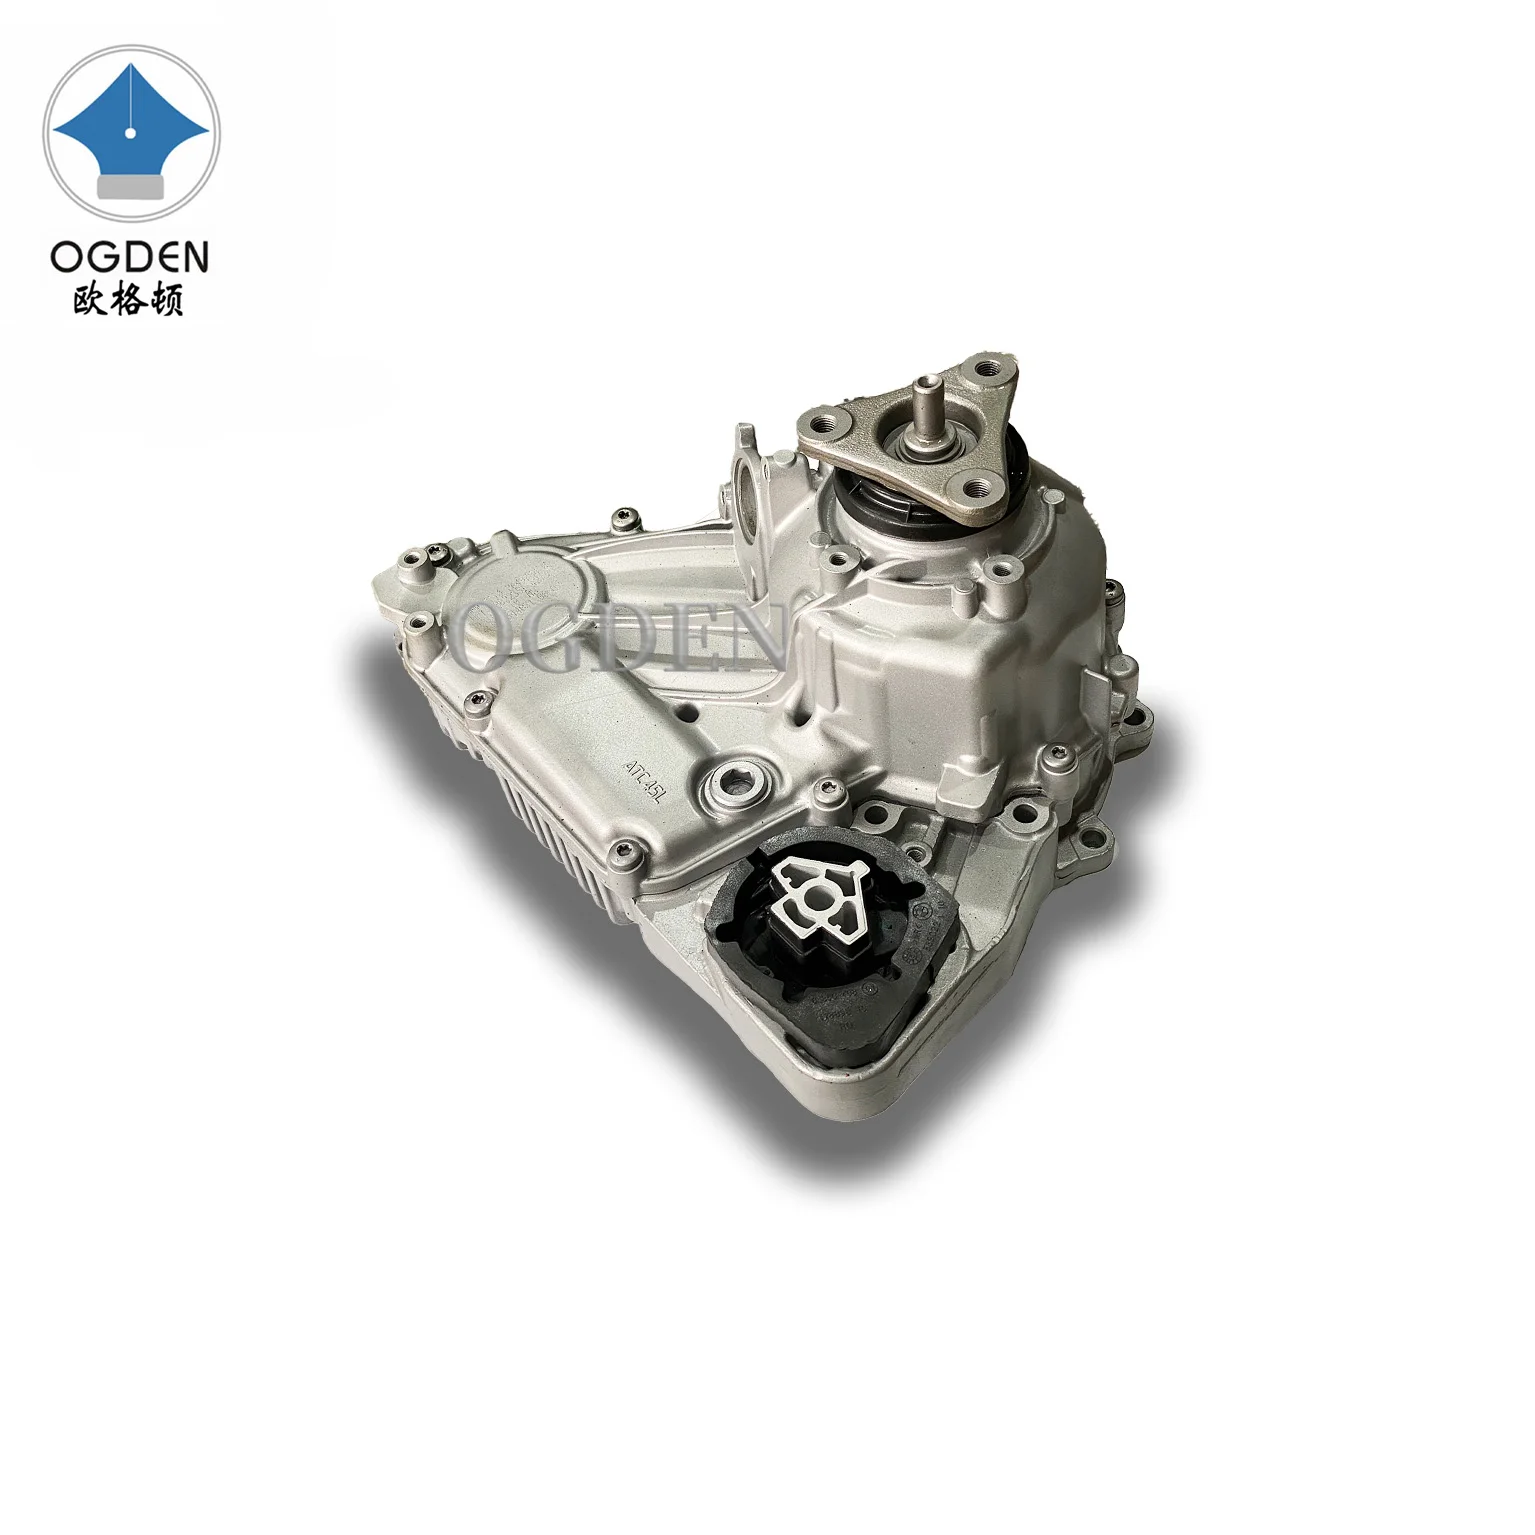 

OGDEN Transfer Case Assembly Fit 2012-2018 BMW X3 X4 X5 X6 E70 E71 F15 F16 F25 ATC45L